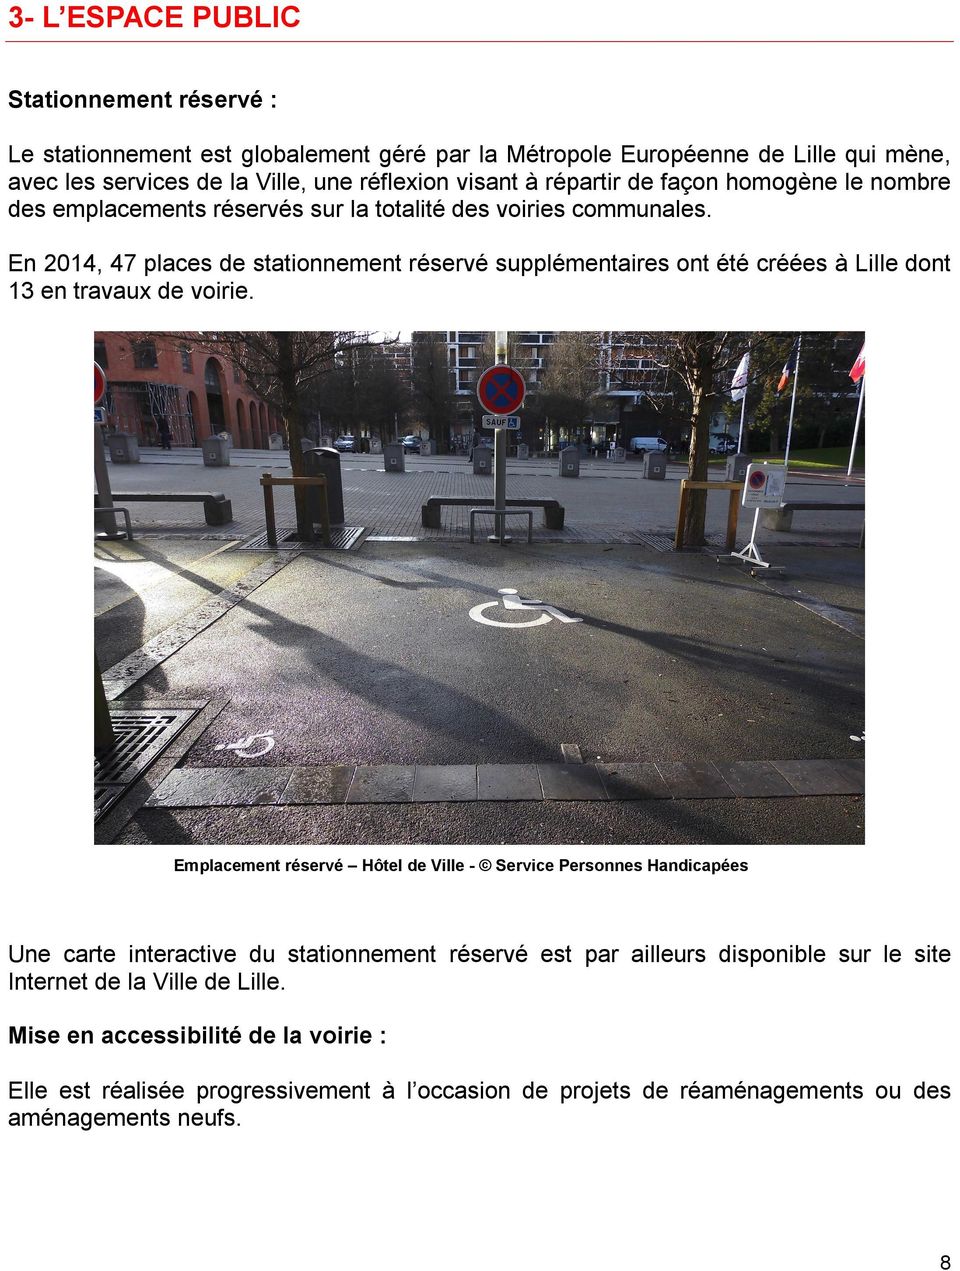 En 2014, 47 places de stationnement réservé supplémentaires ont été créées à Lille dont 13 en travaux de voirie.